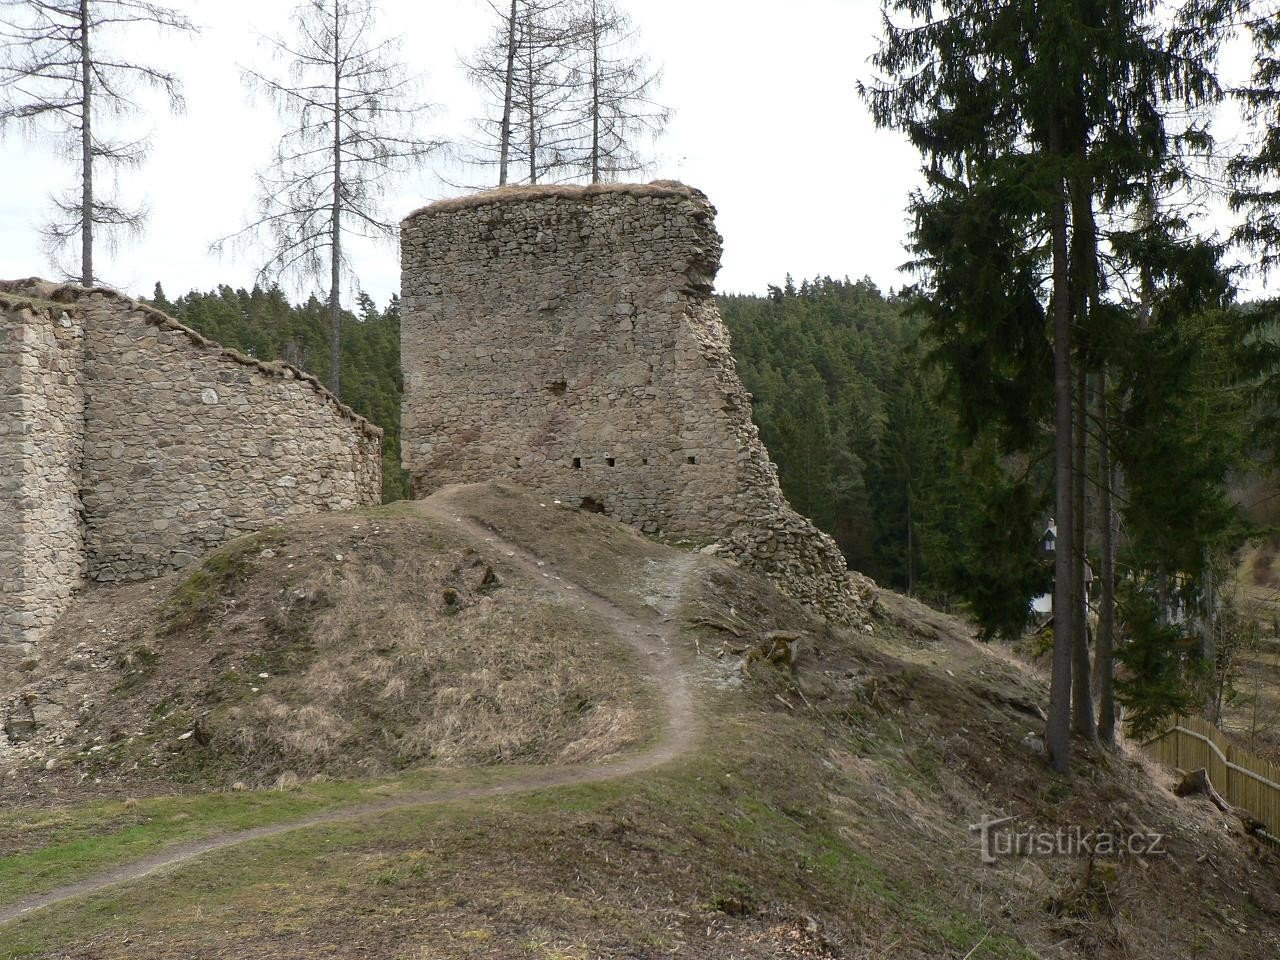 Porešín, il palazzo del nord